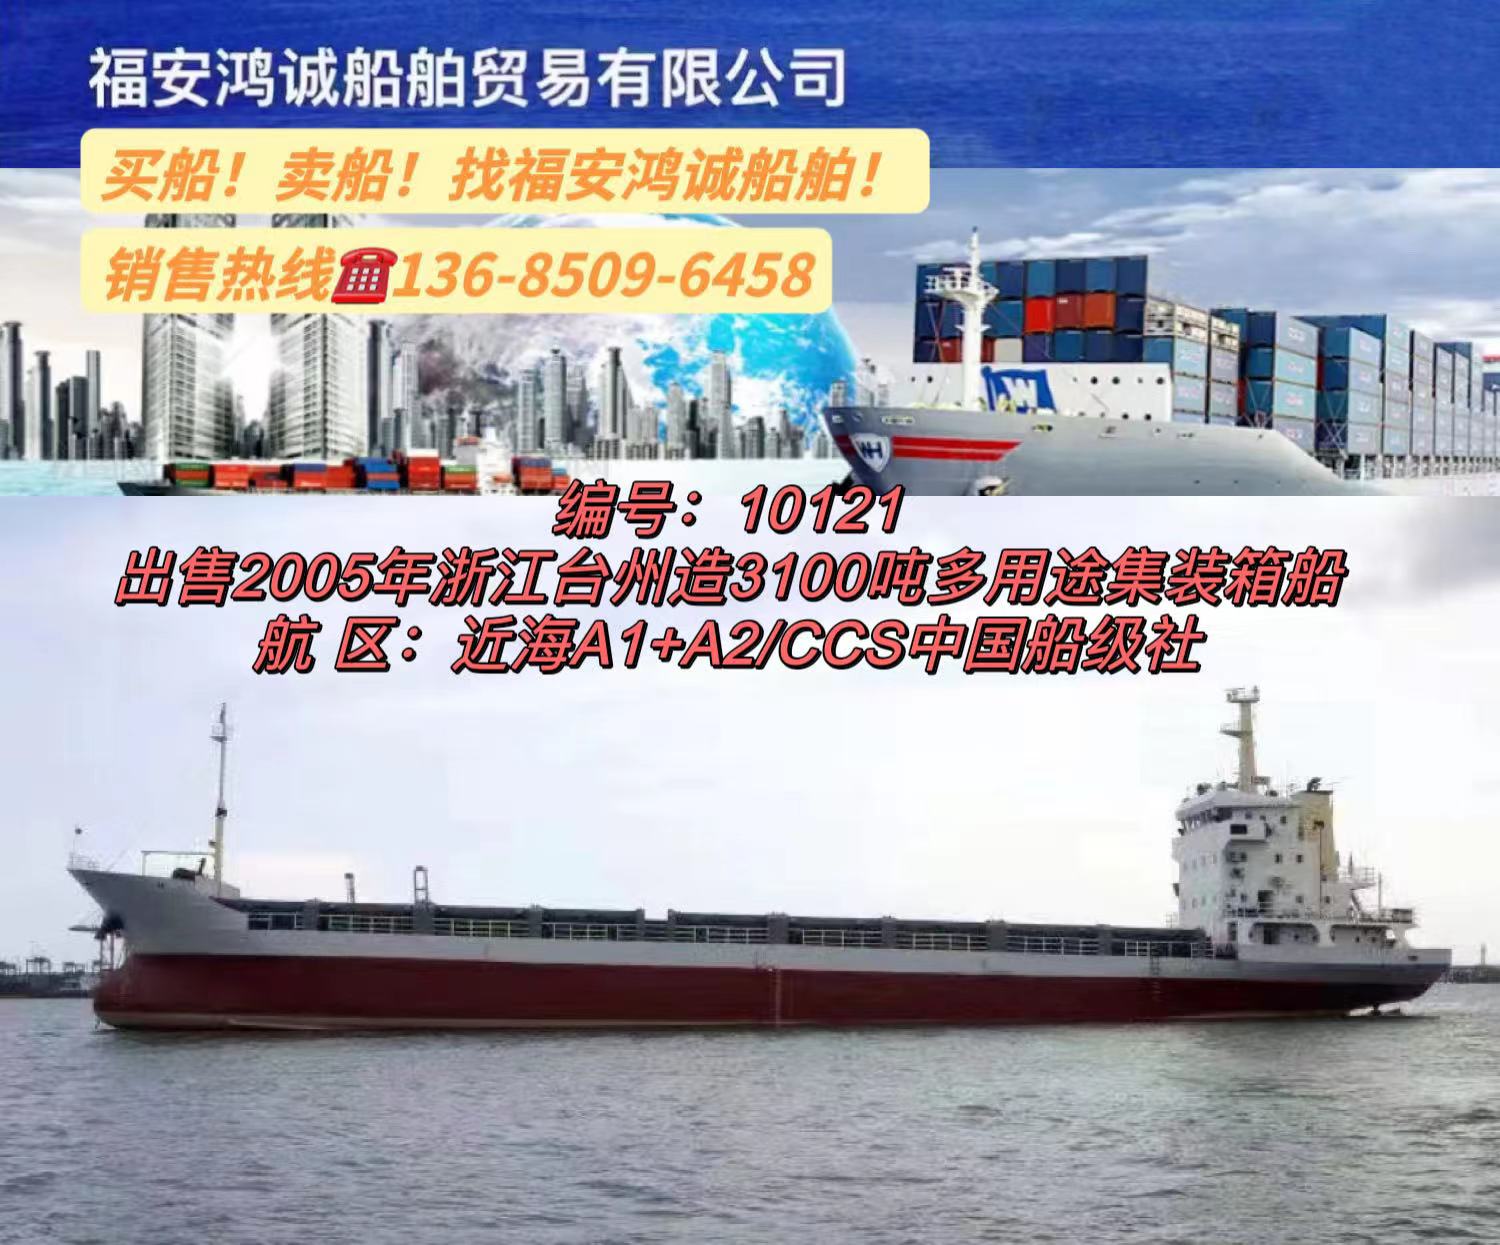 出售3100吨多用途集装箱船 2005年浙江台州建造/